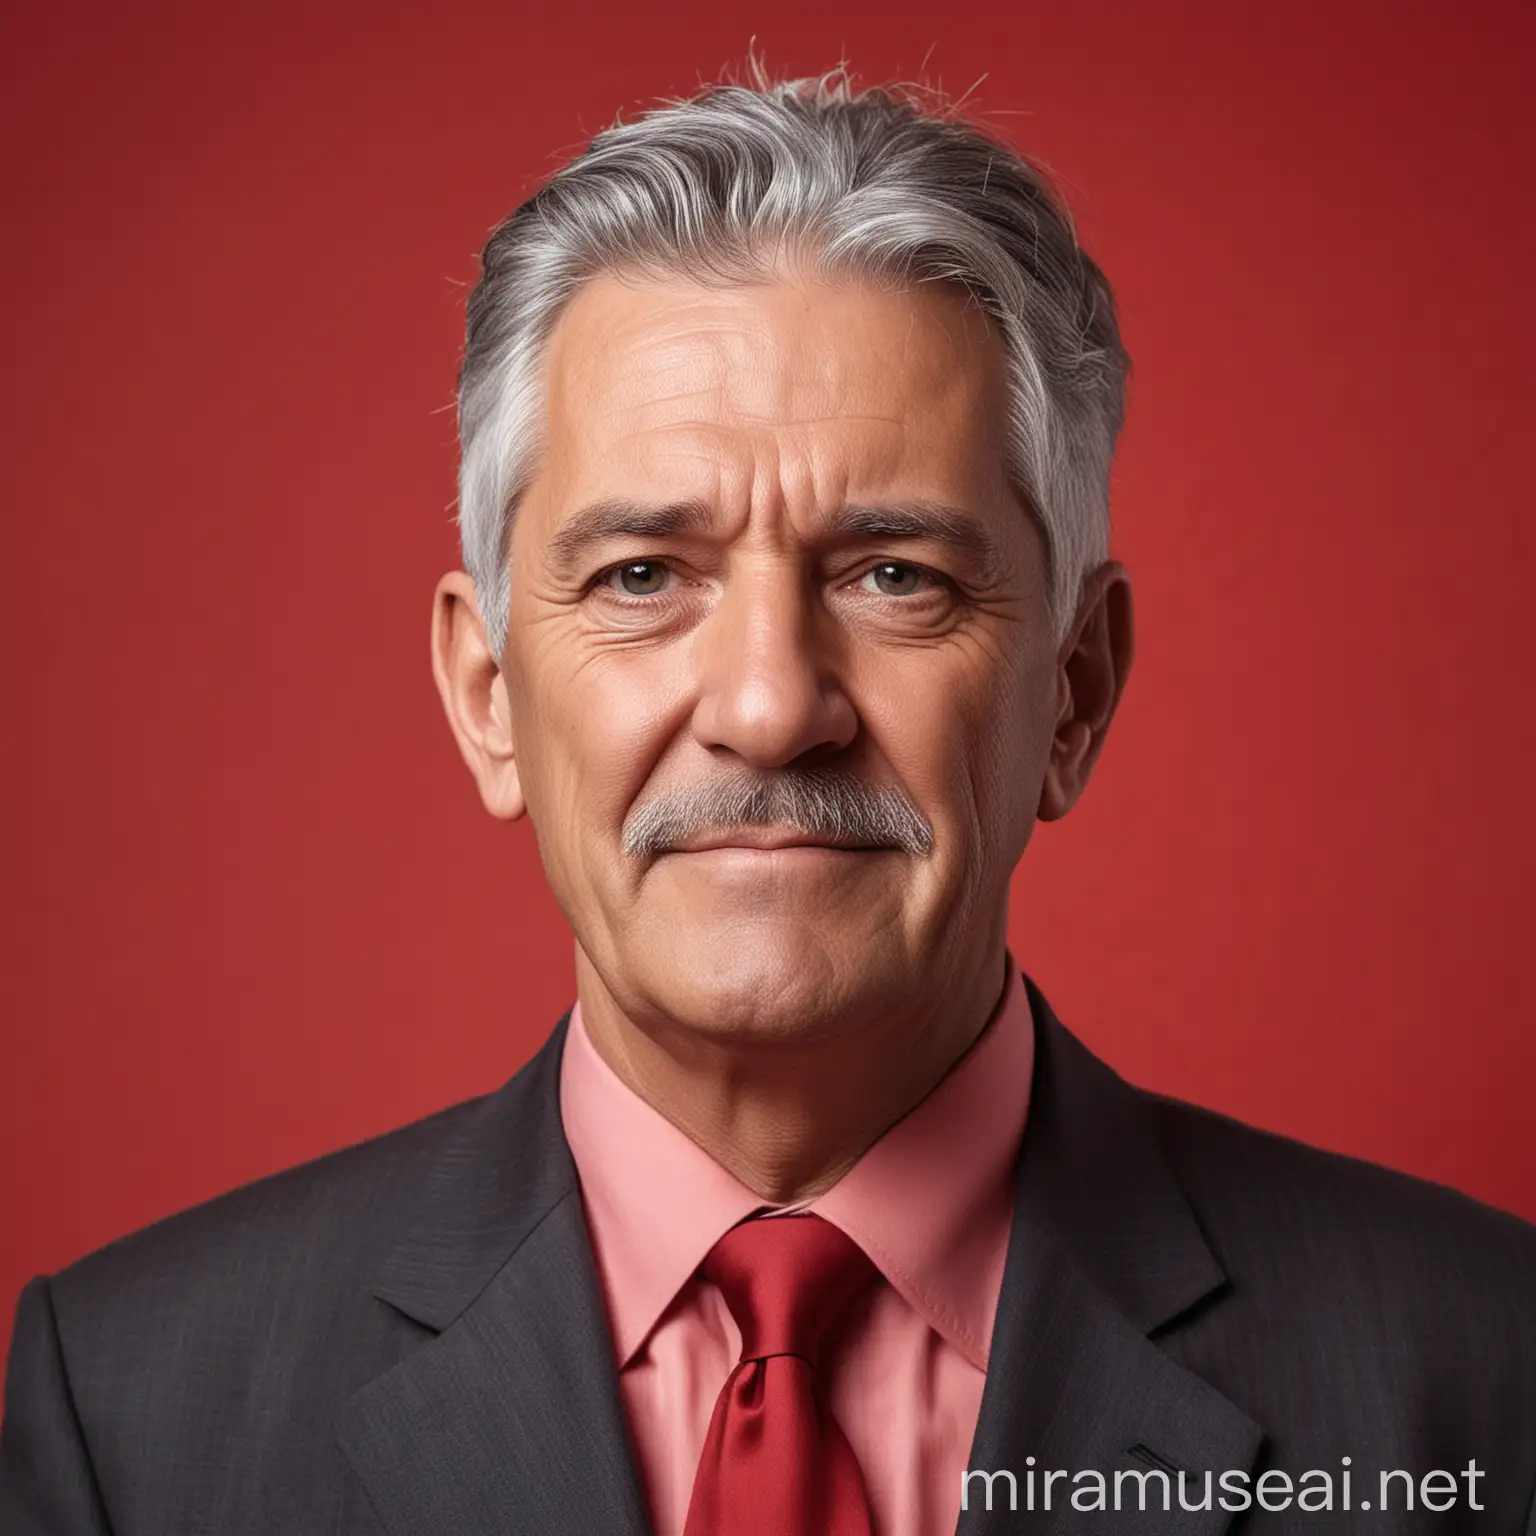 Político hombre de unos 60 años canoso con fondo rojo